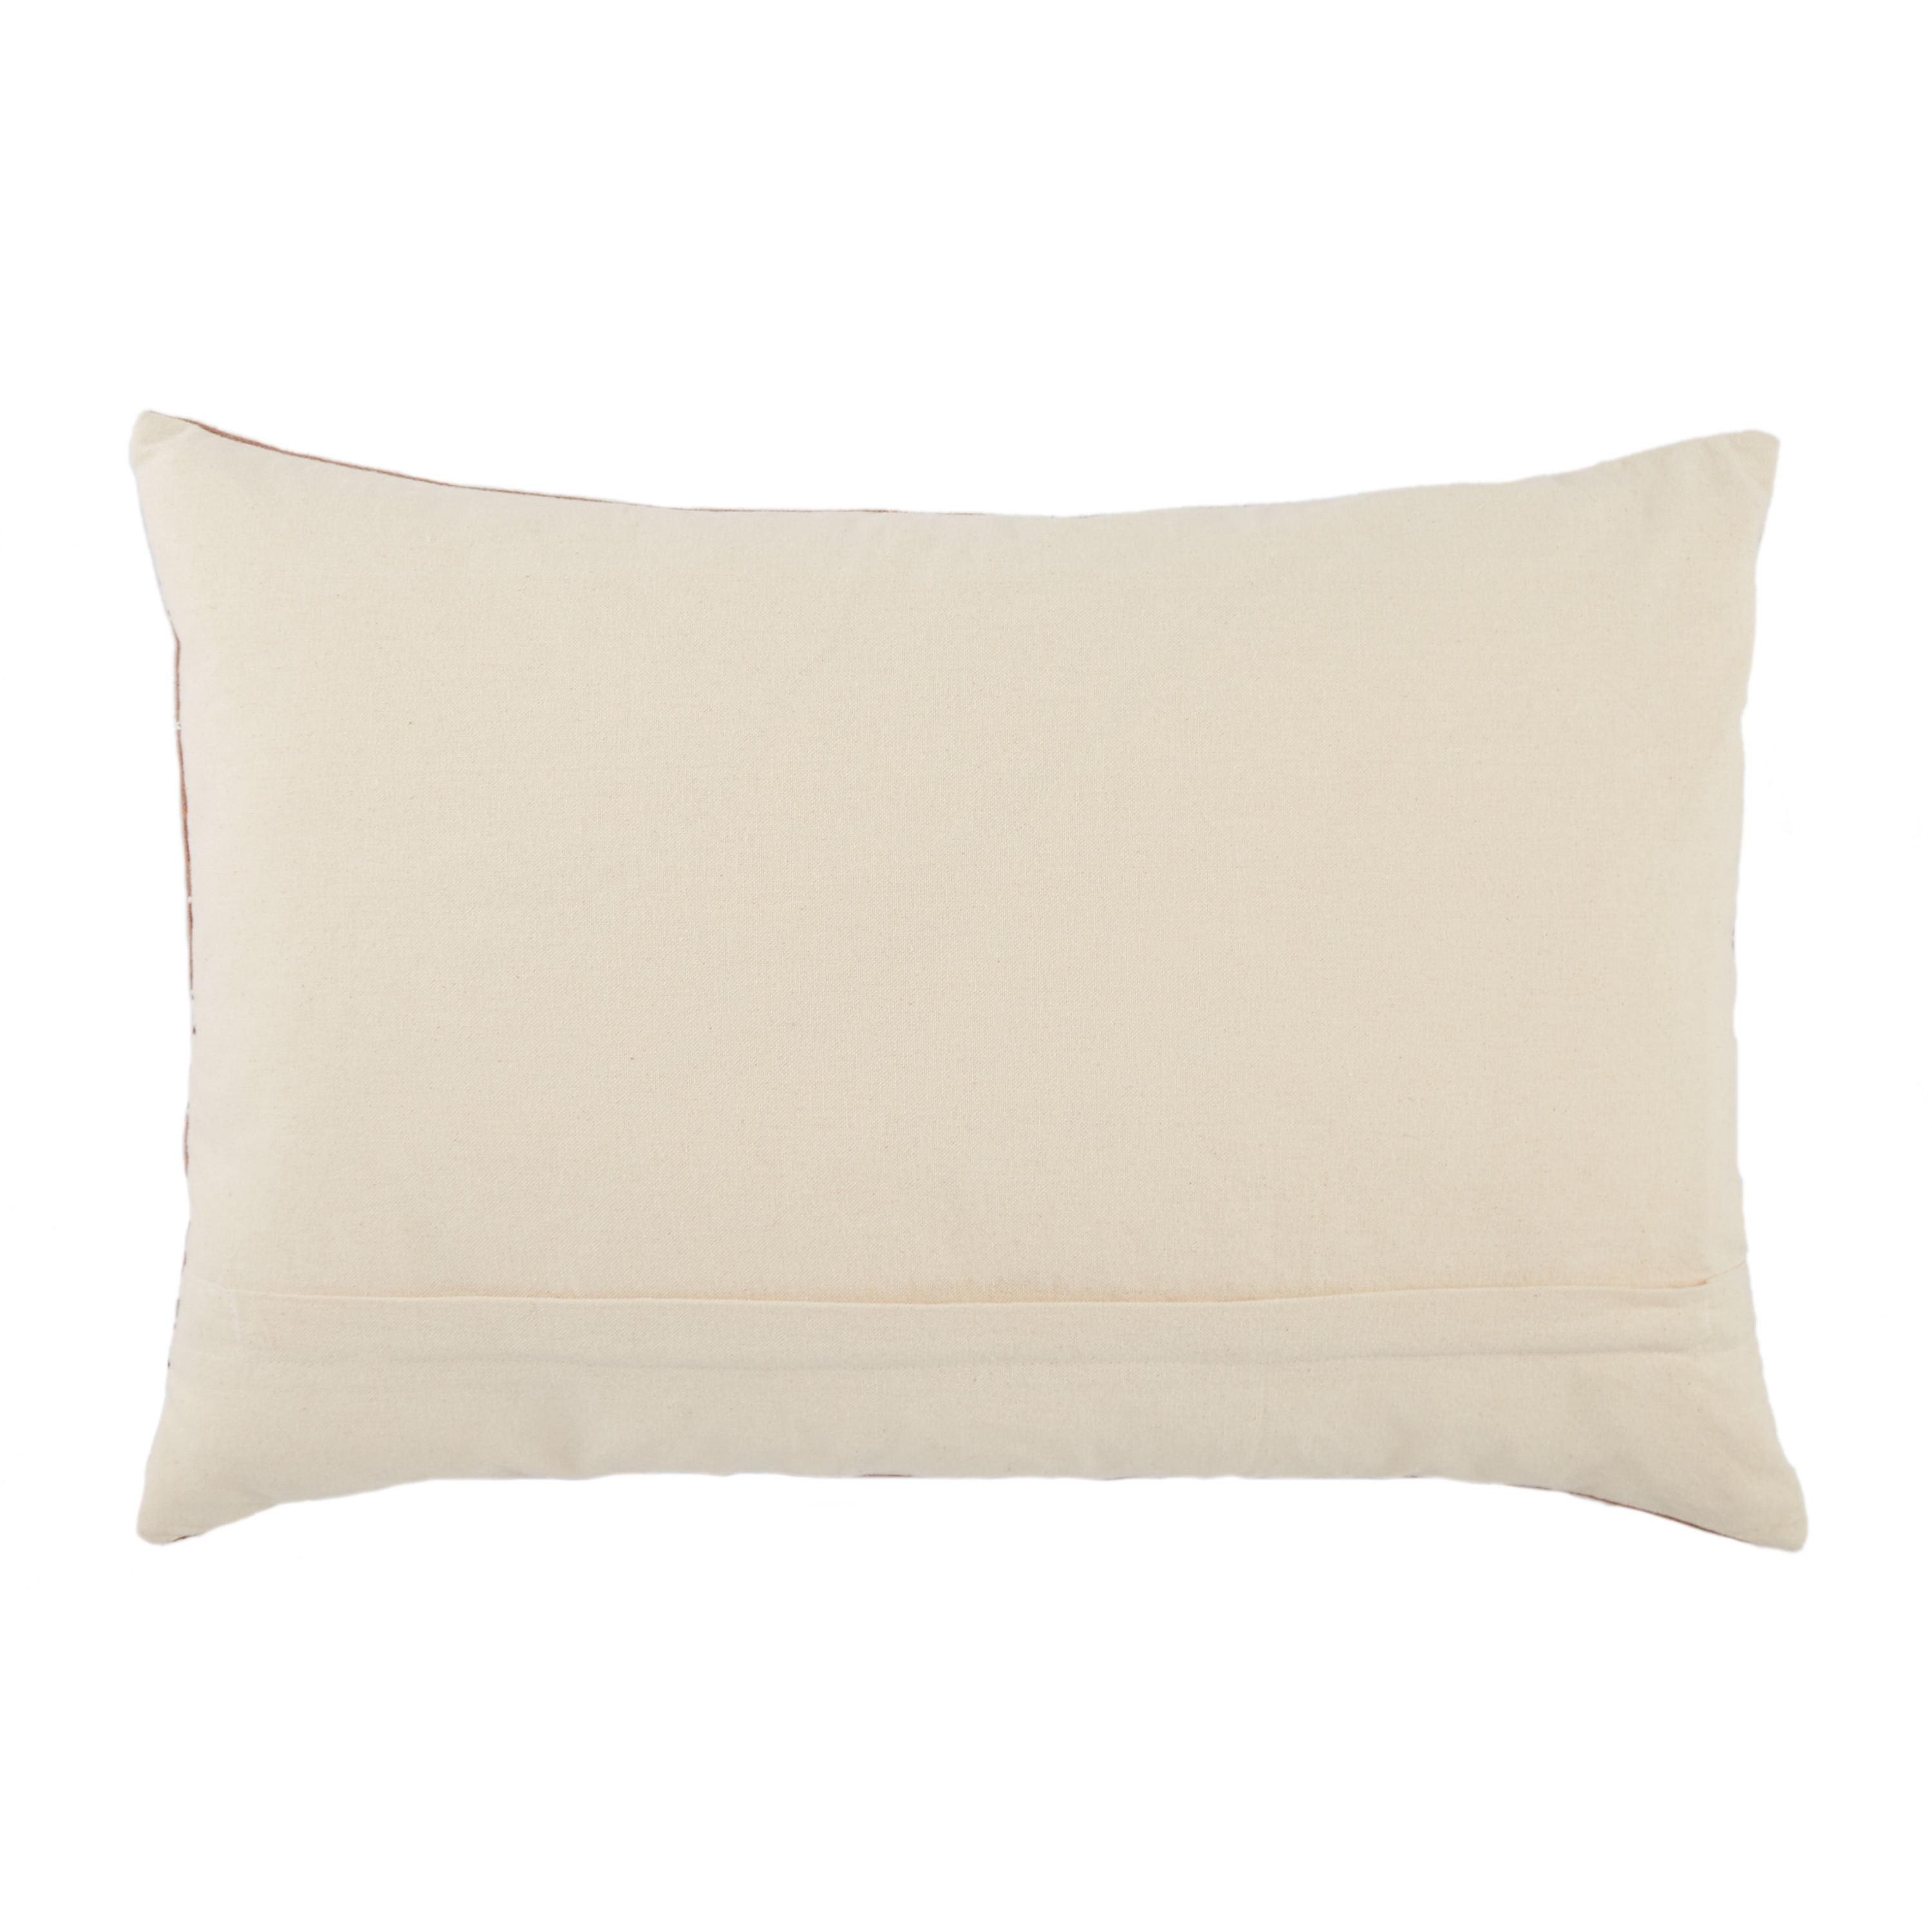 Phek Lumbar Pillow Cover, 24" x 16" - Image 1